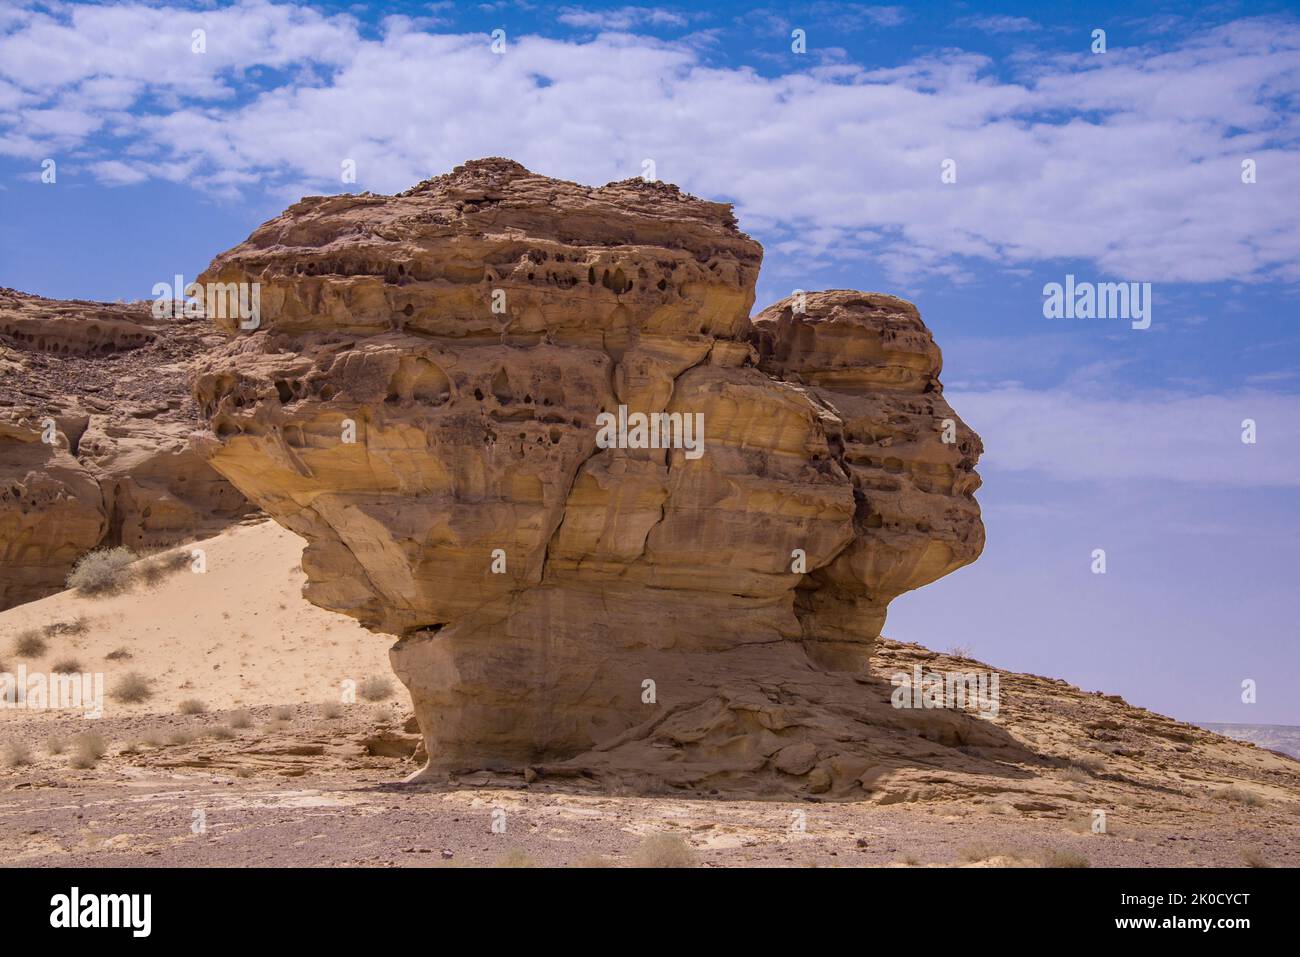 Extraordinaire affleurement rocheux avec profil du visage humain Hegra Arabie Saoudite Banque D'Images